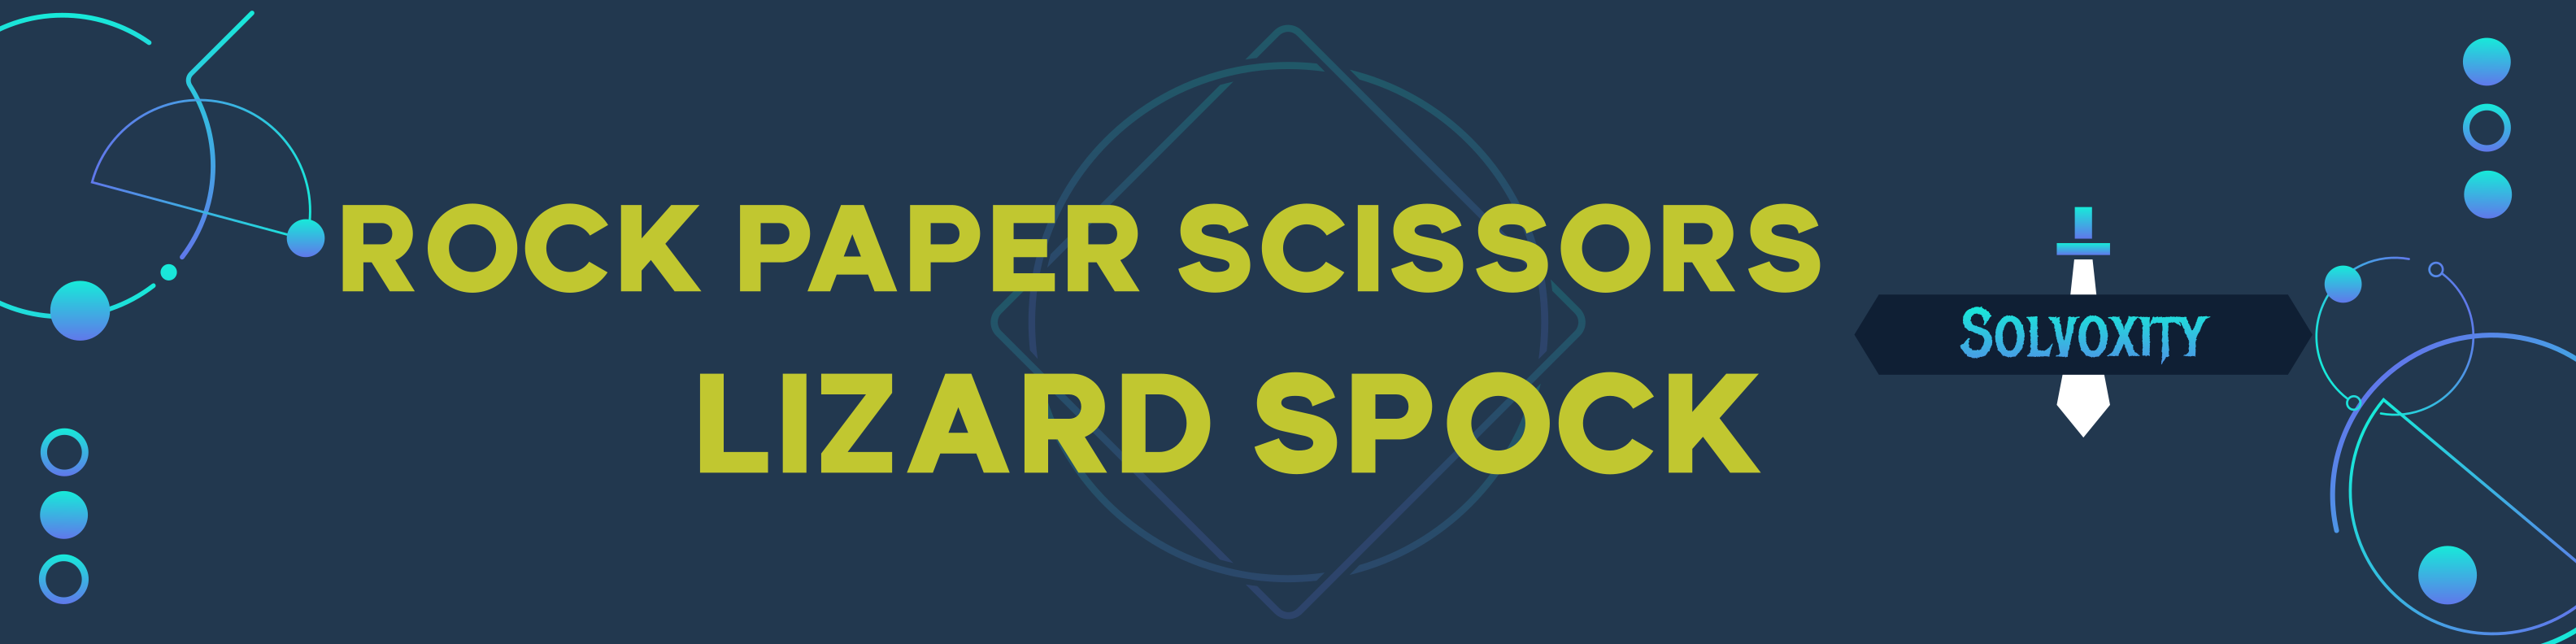 Rock scissors paper lizard spock